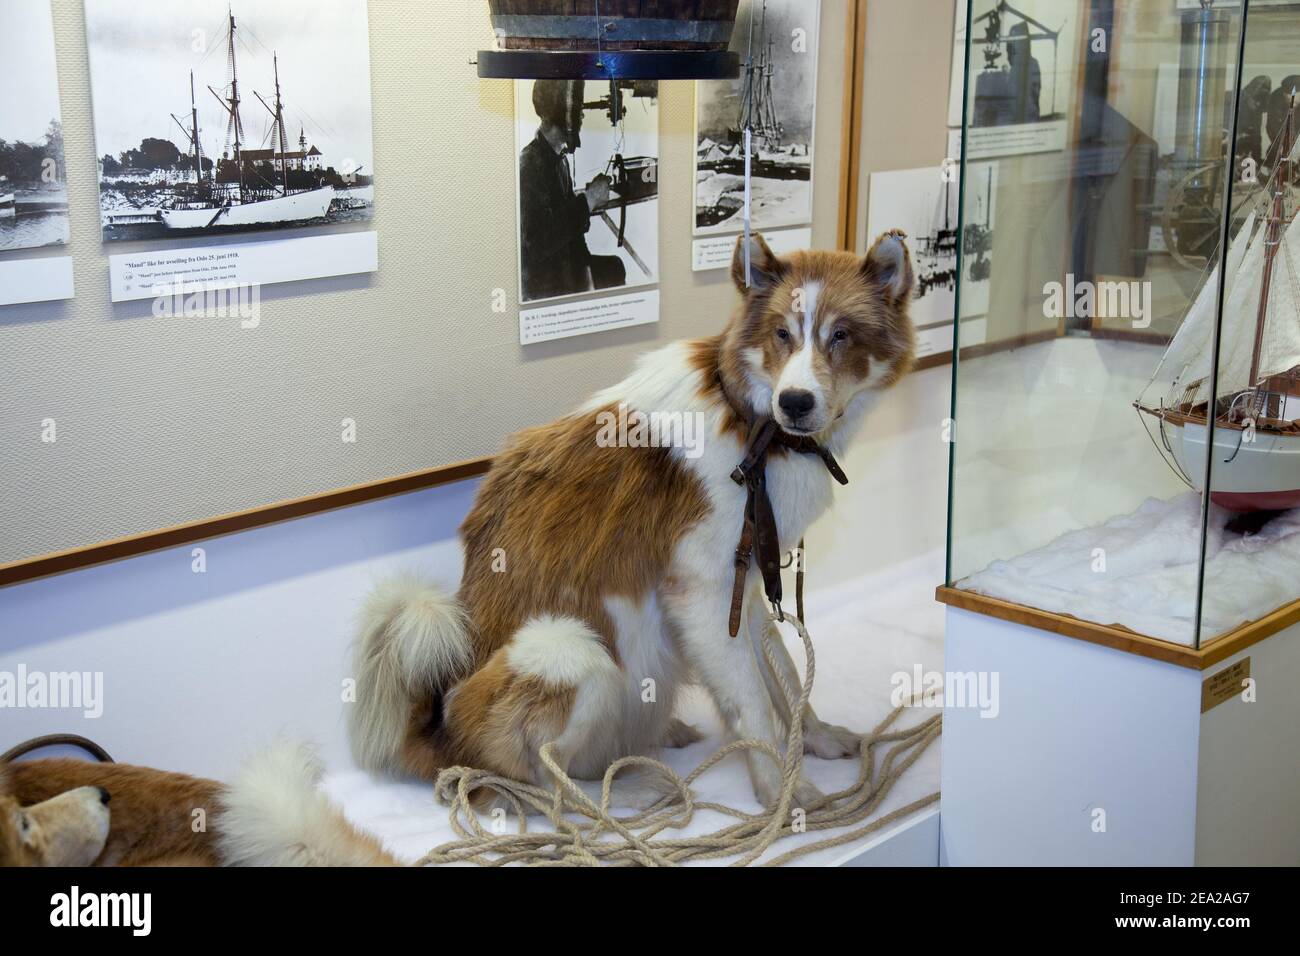 TROMSO, NORVEGIA - LUGLIO 28 2012: Cane da slitta dell'esploratore norvegese delle regioni polari Roald Amundsen è nel museo Polar. La nave di spedizione di Amundsen c Foto Stock